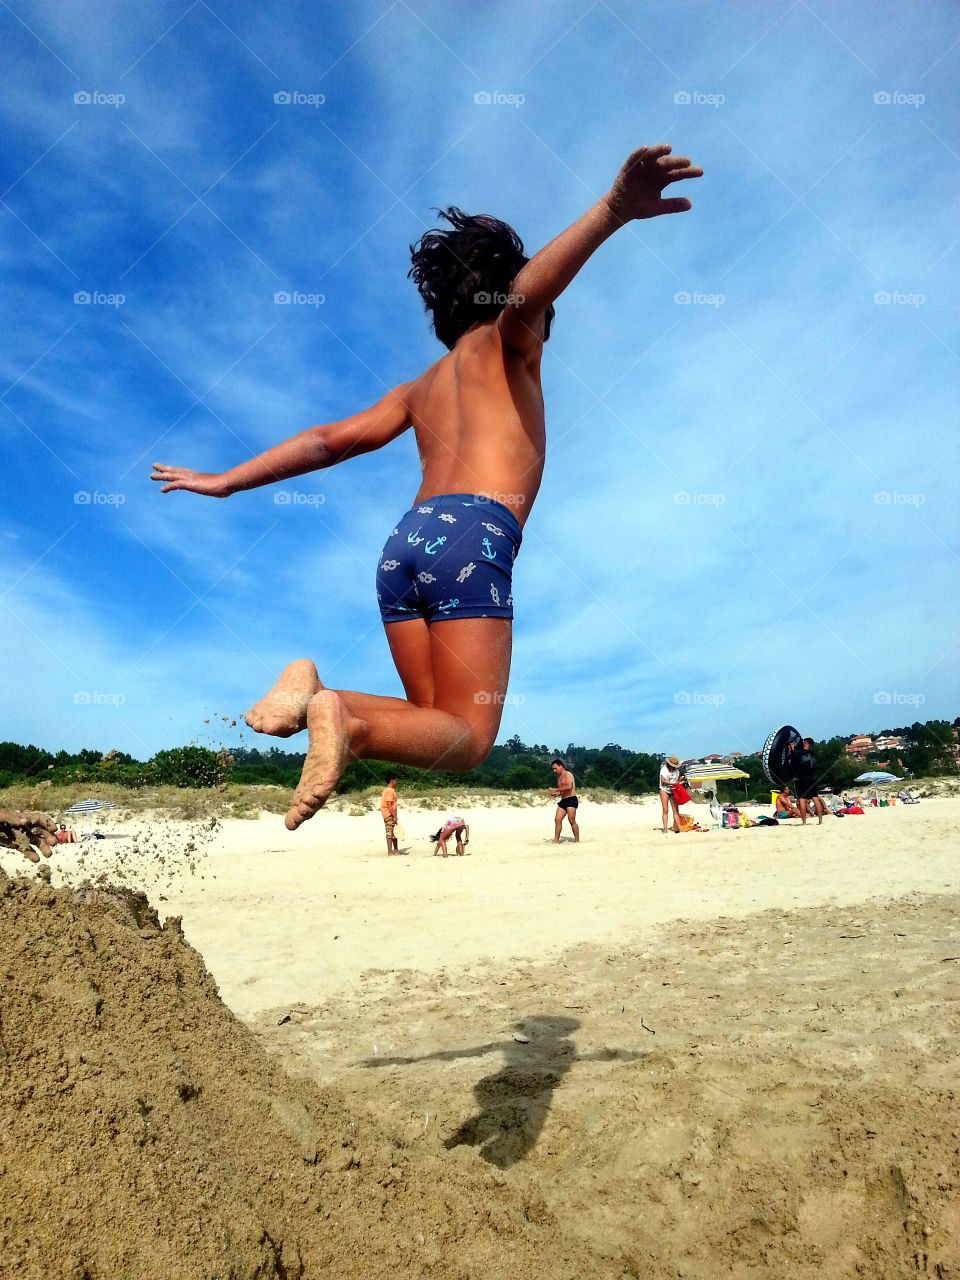 jump. jump in the beach